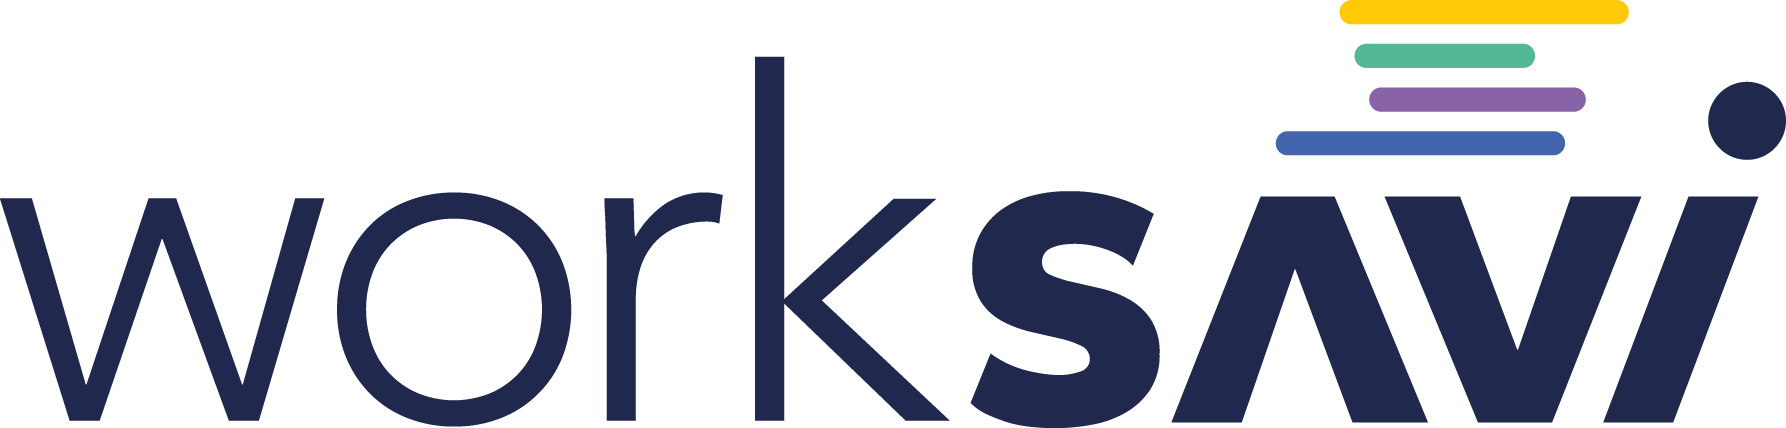 WorkSavi logo